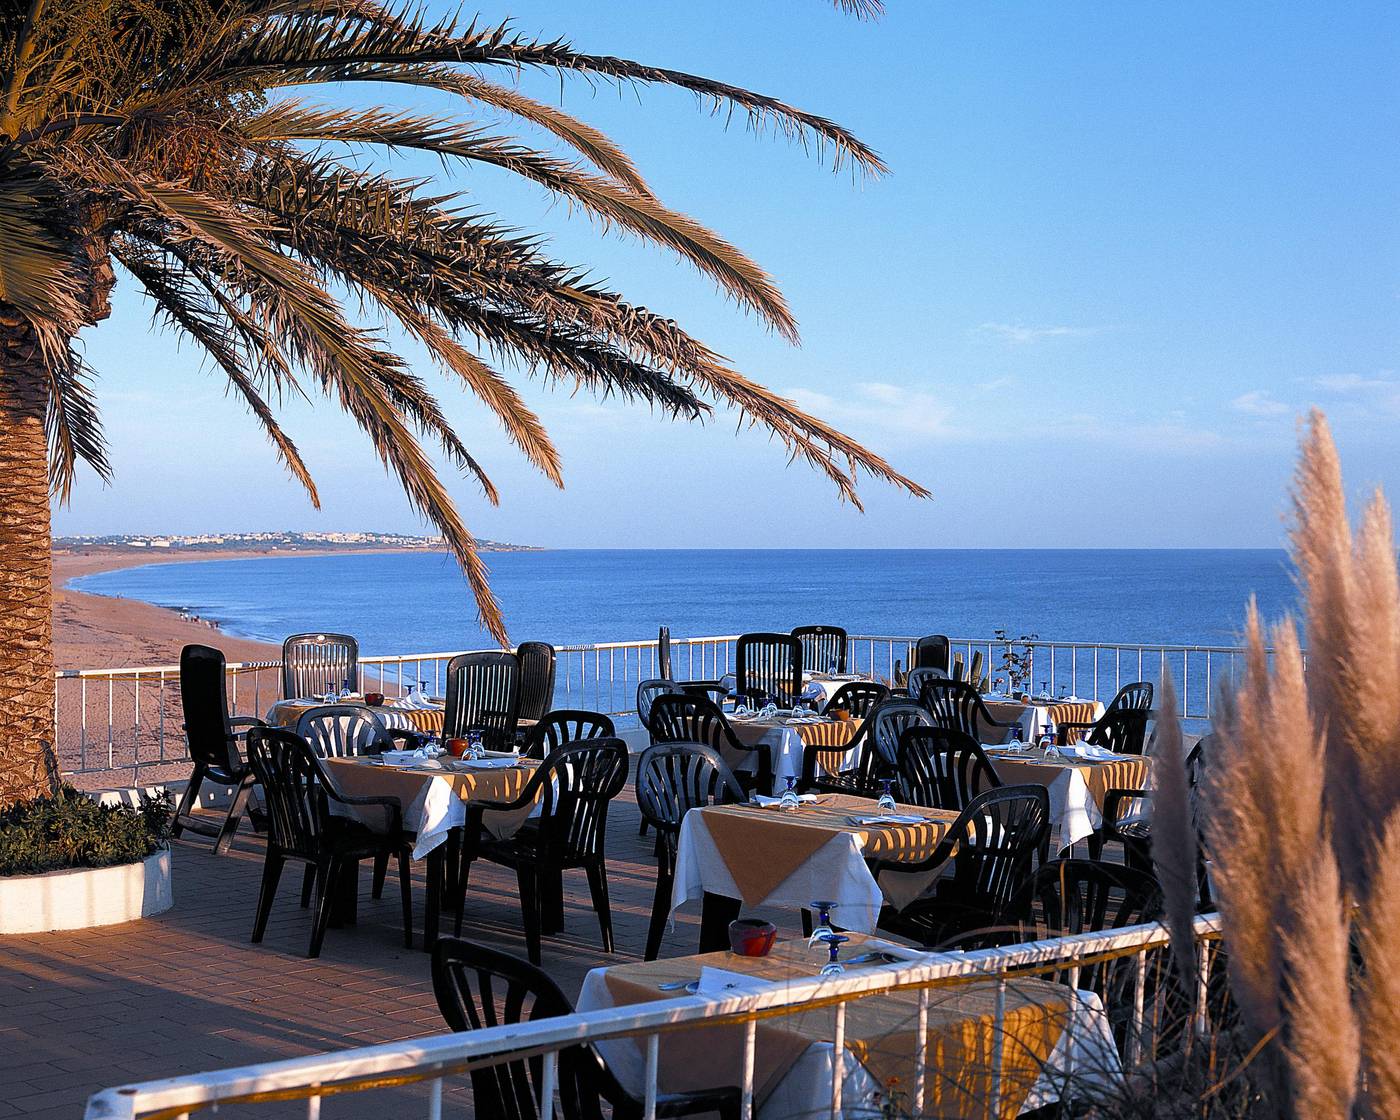 Holiday Inn Algarve in Costa de Algarve, Portugal